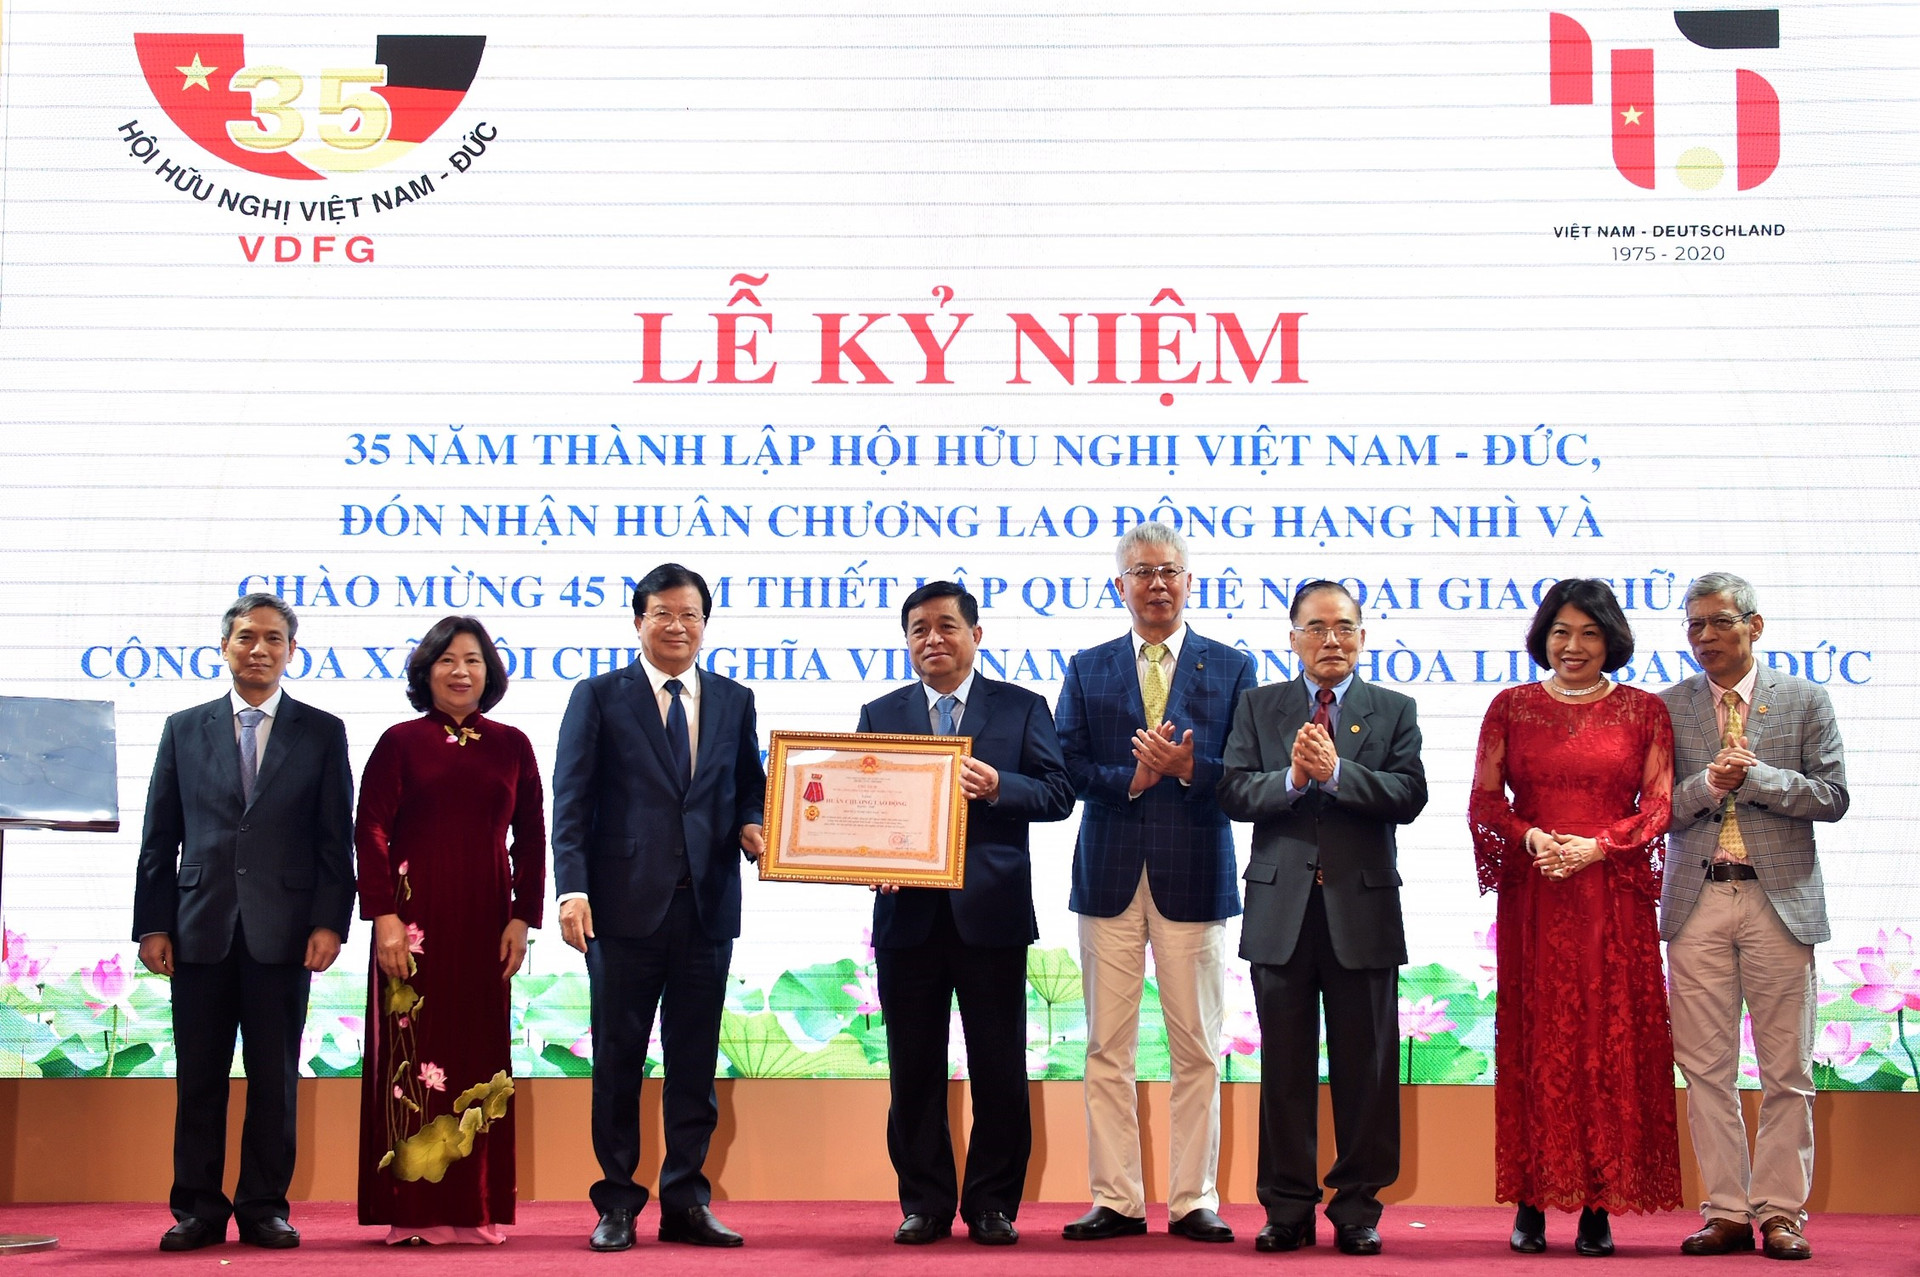 Kỷ niệm 35 năm thành lập Hội Hữu nghị Việt Nam - Đức - ảnh 1